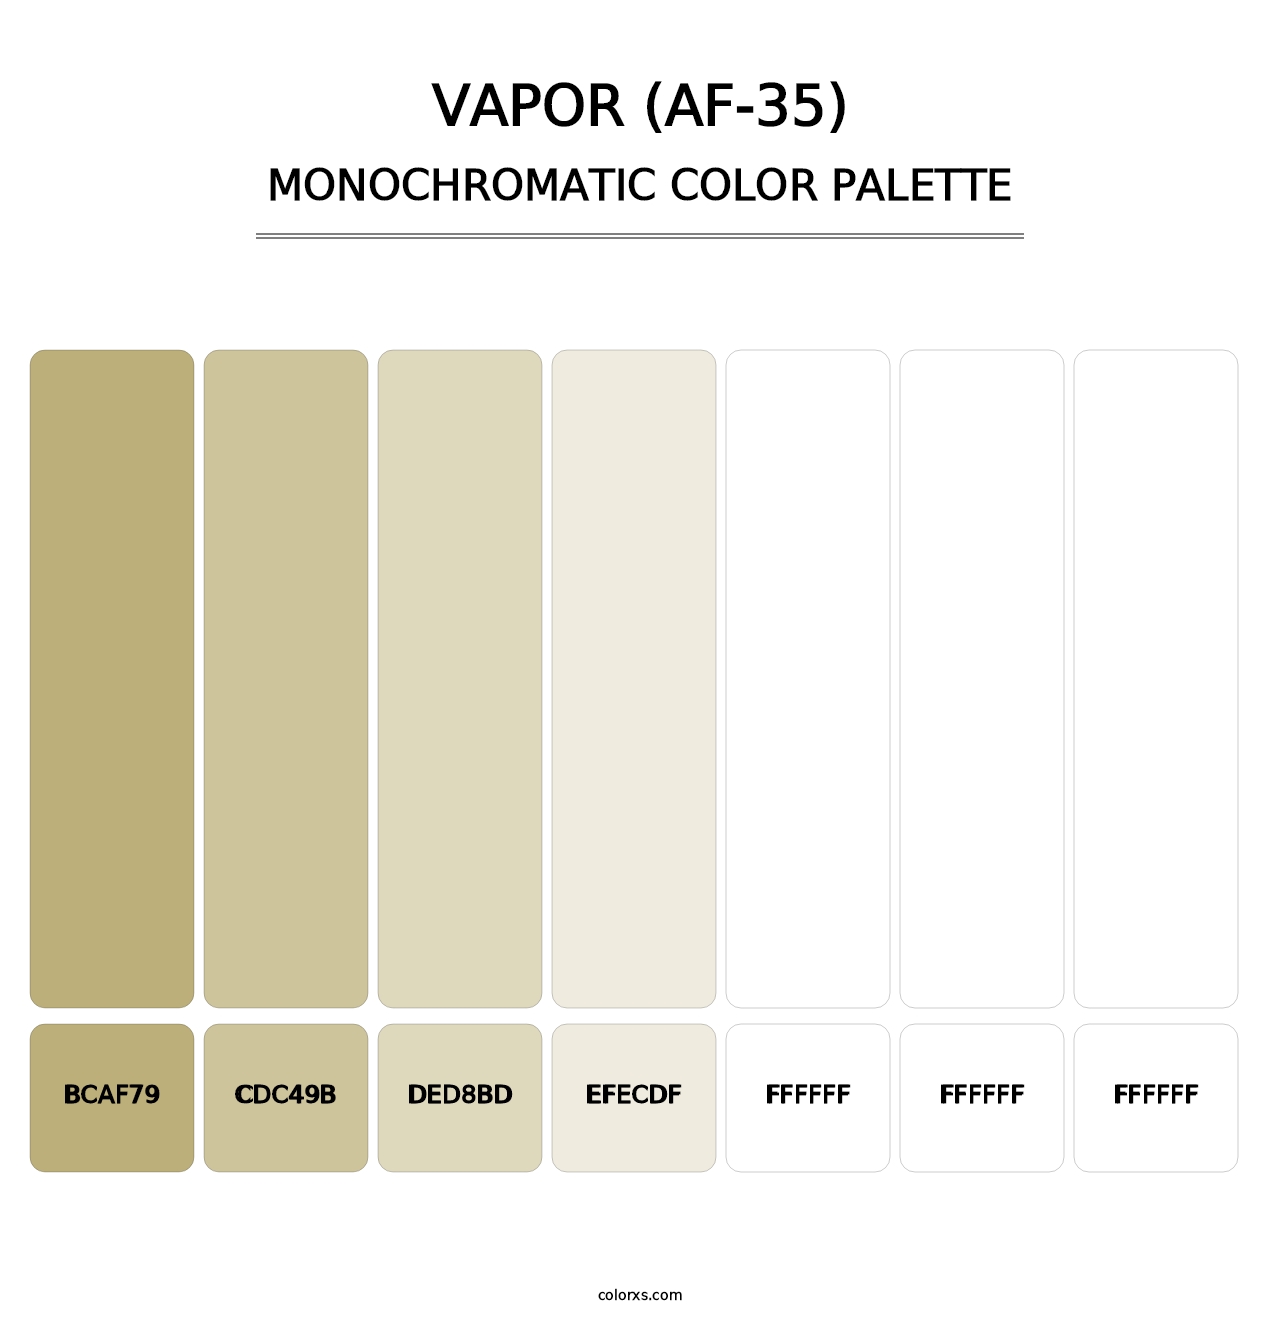 Vapor (AF-35) - Monochromatic Color Palette